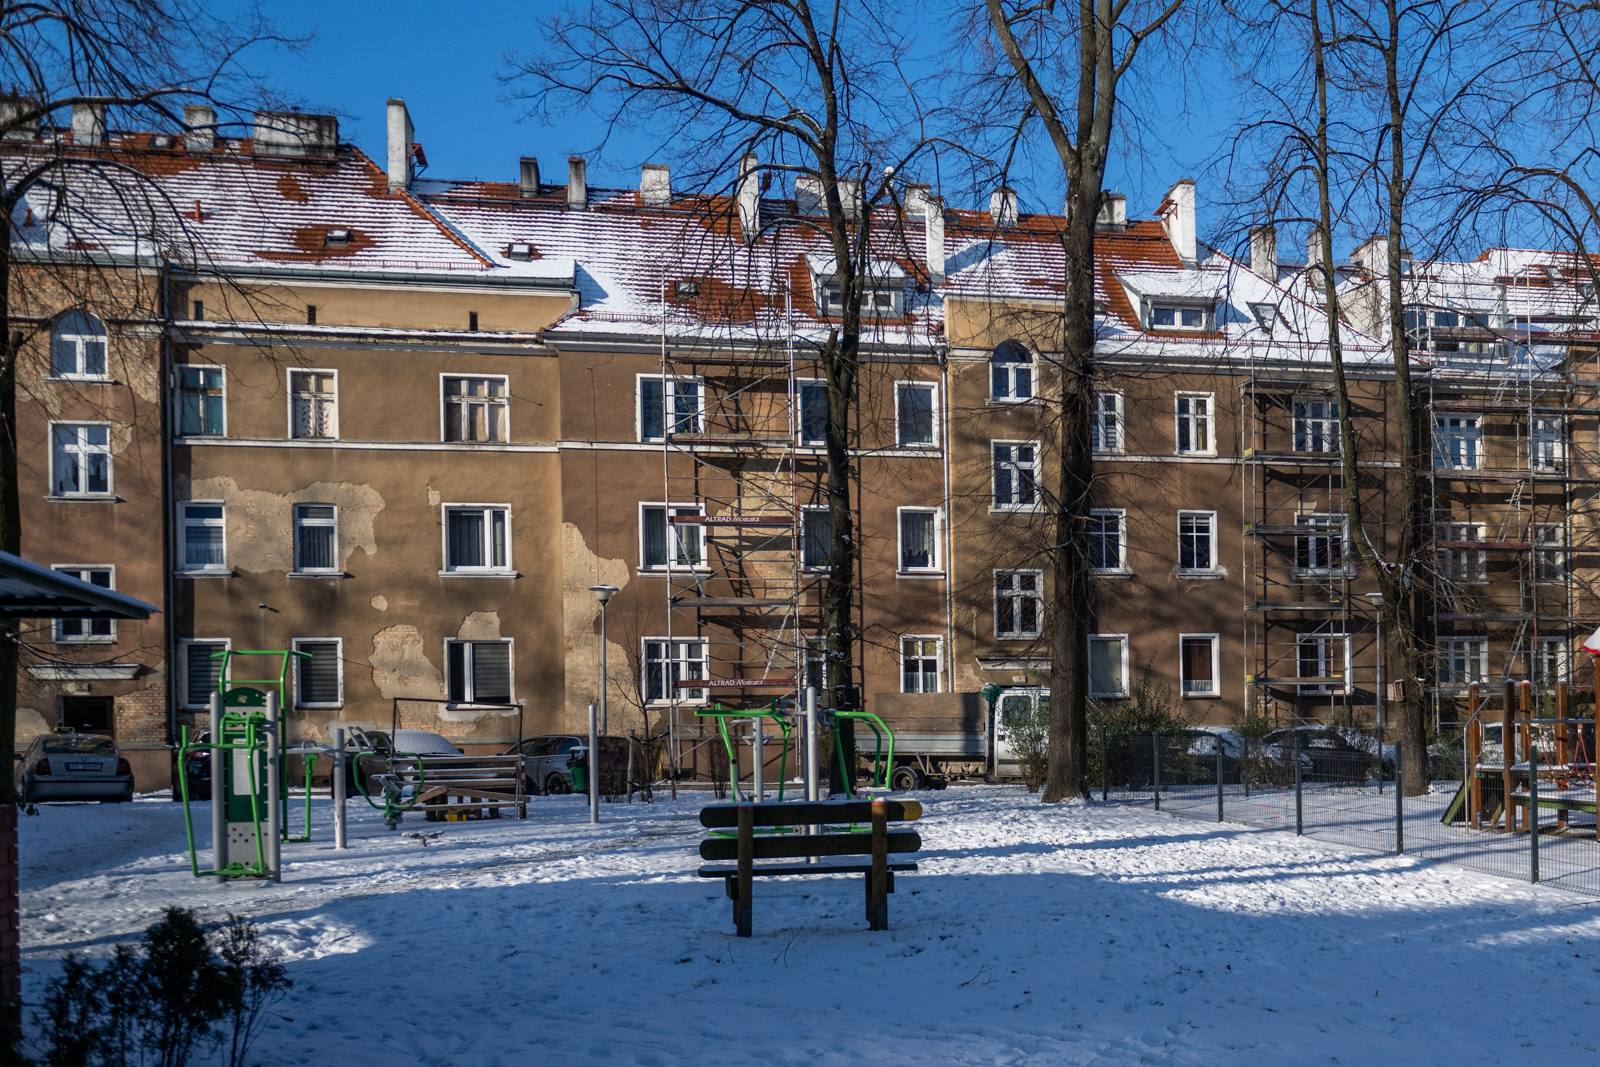 Kolonia mieszkaniowa w Poznaniu to blok, który powstał w kwartale ulic Wspólna – Rolna – Tokarska w Poznaniu.